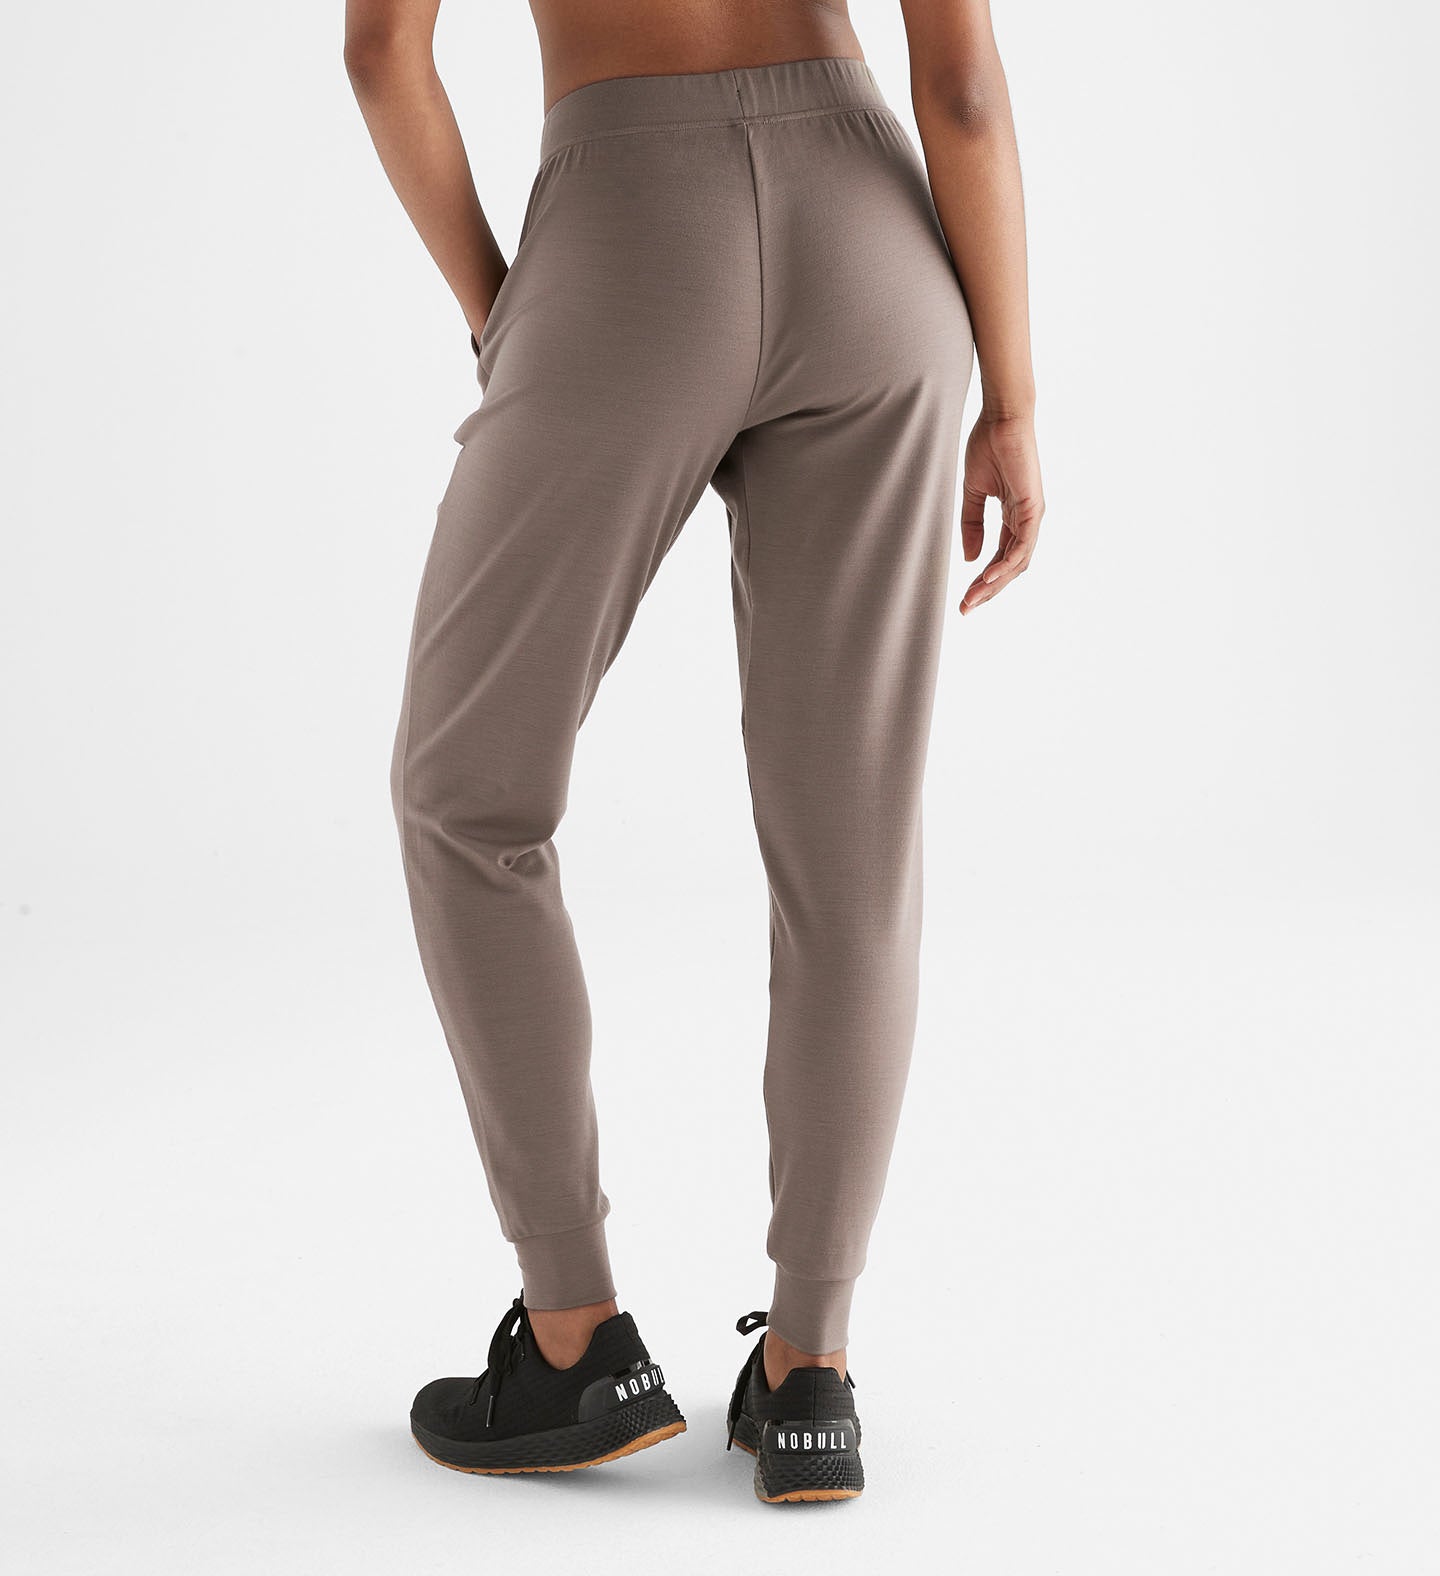 Plume Women's Jogger Style PJ Pants